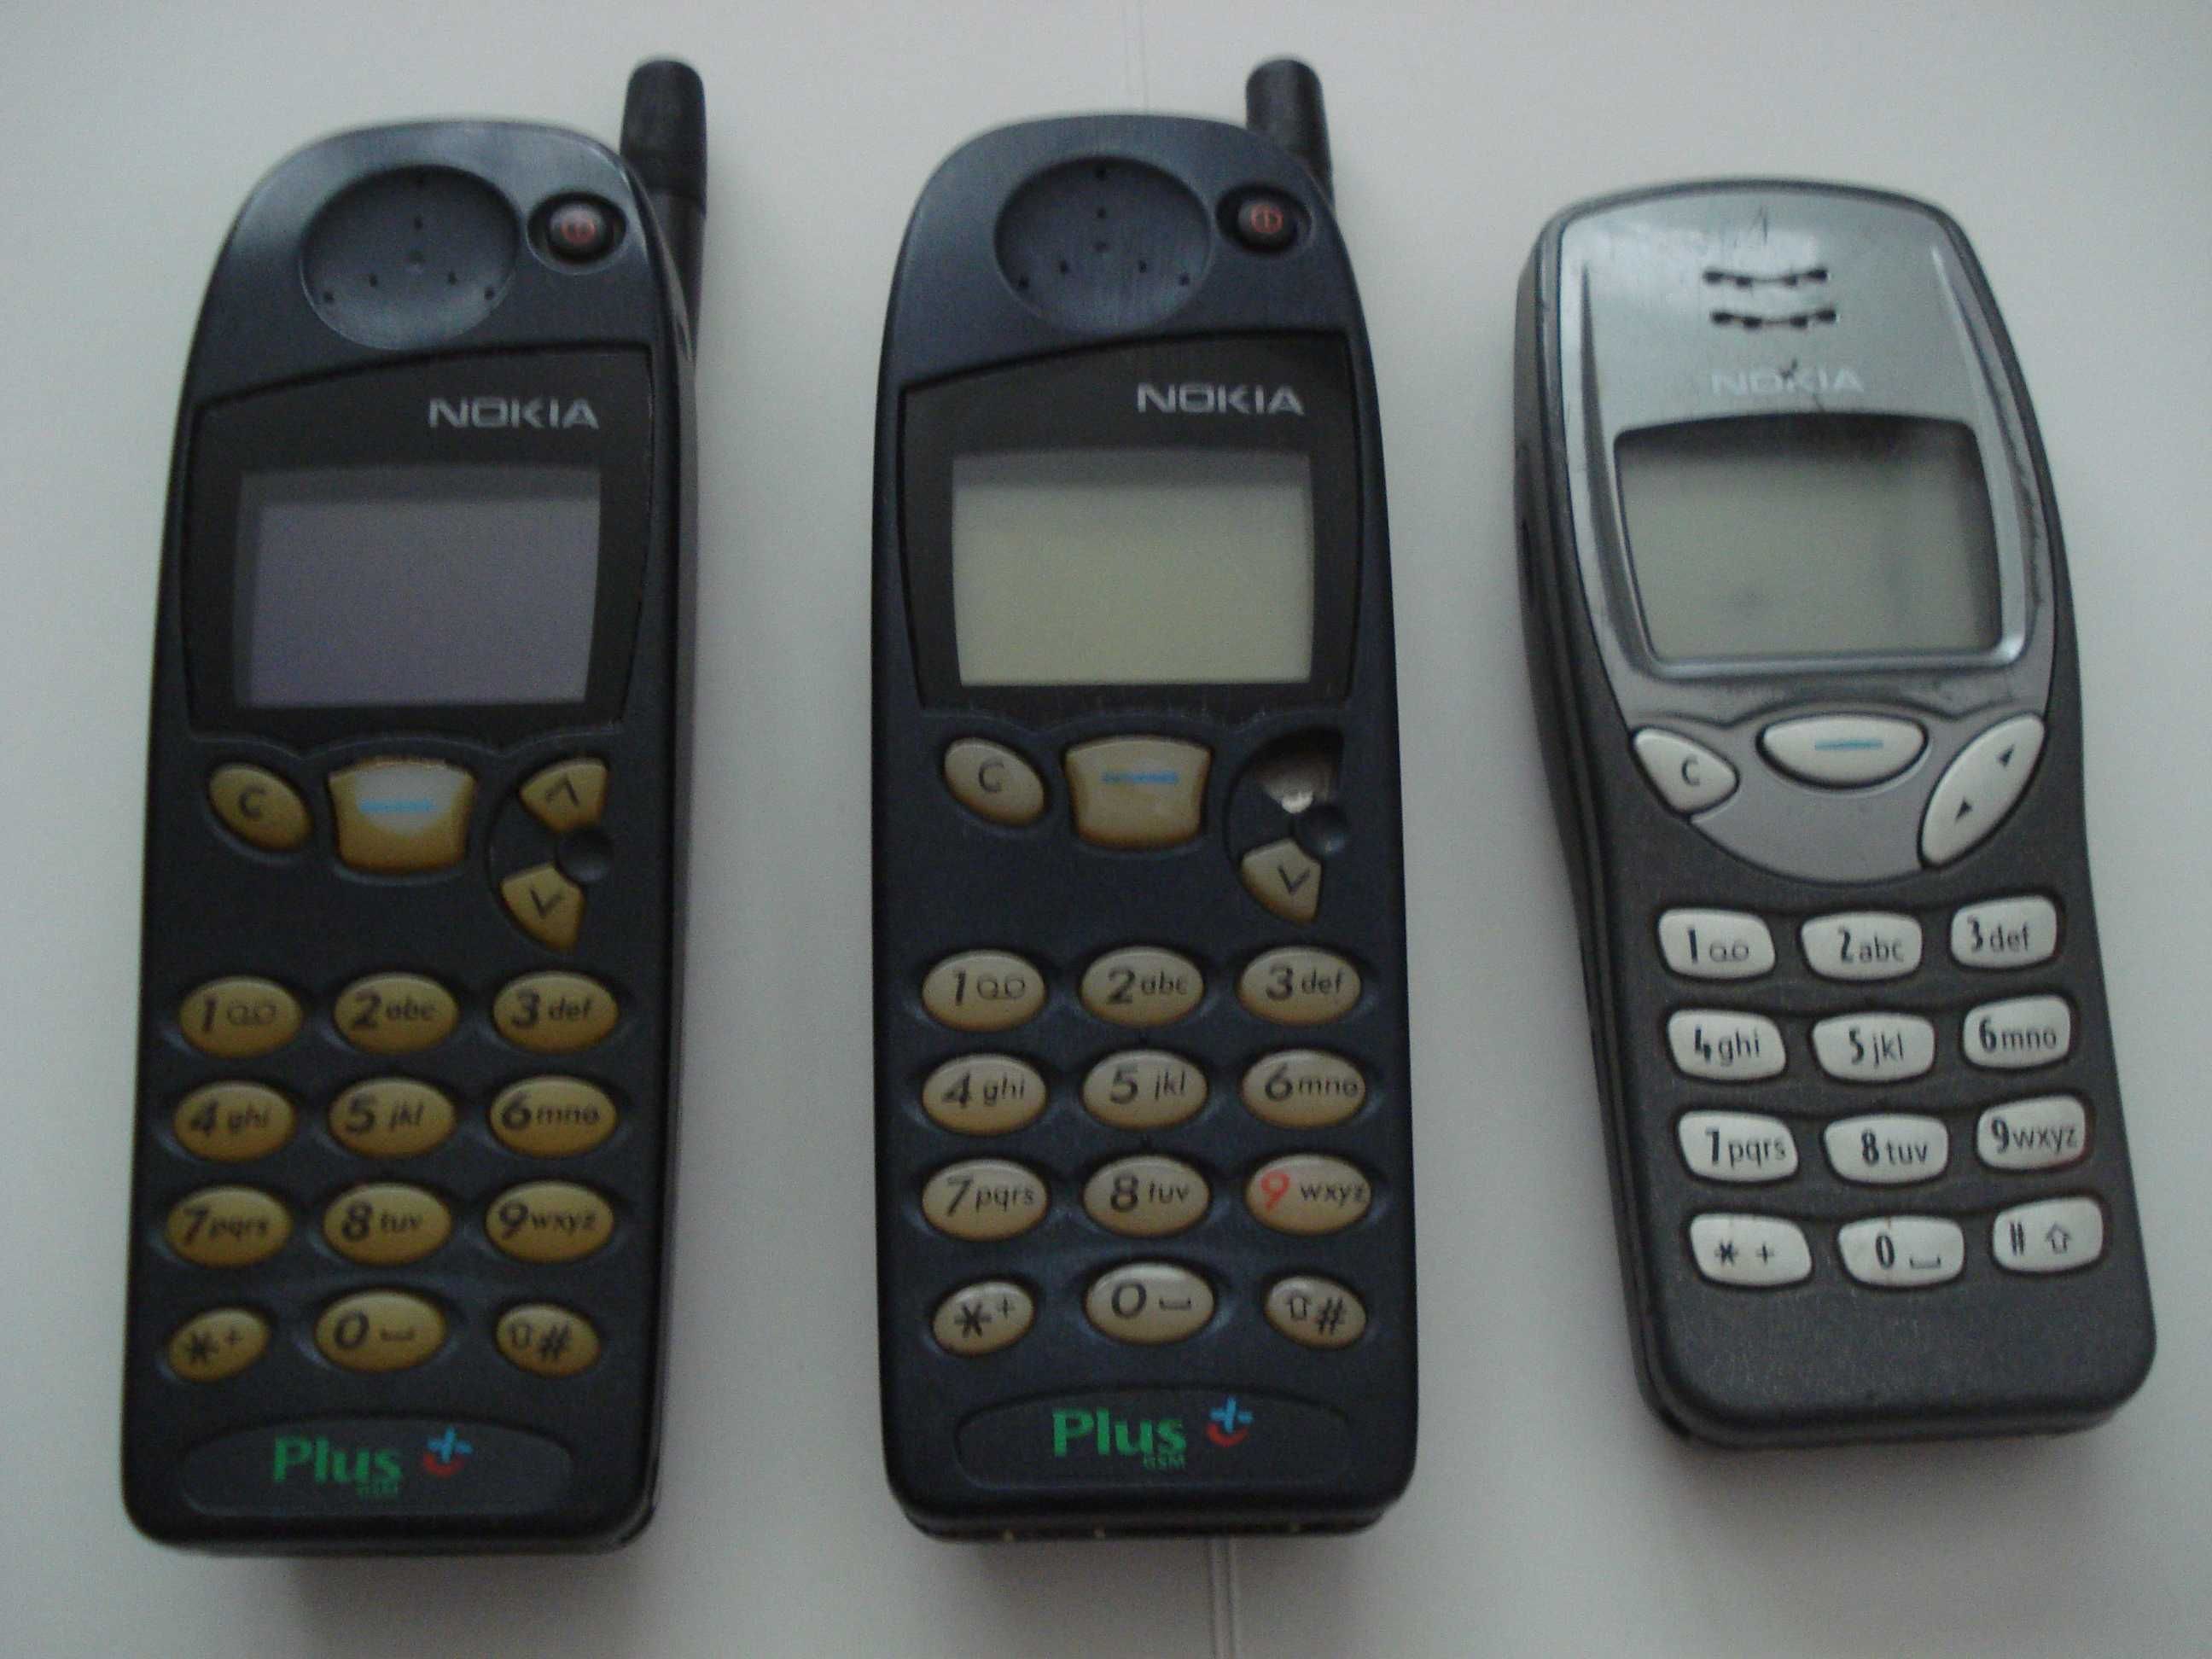 NOKIA 5110, NOKIA 5190, NOKIA 3210 vintage GSM